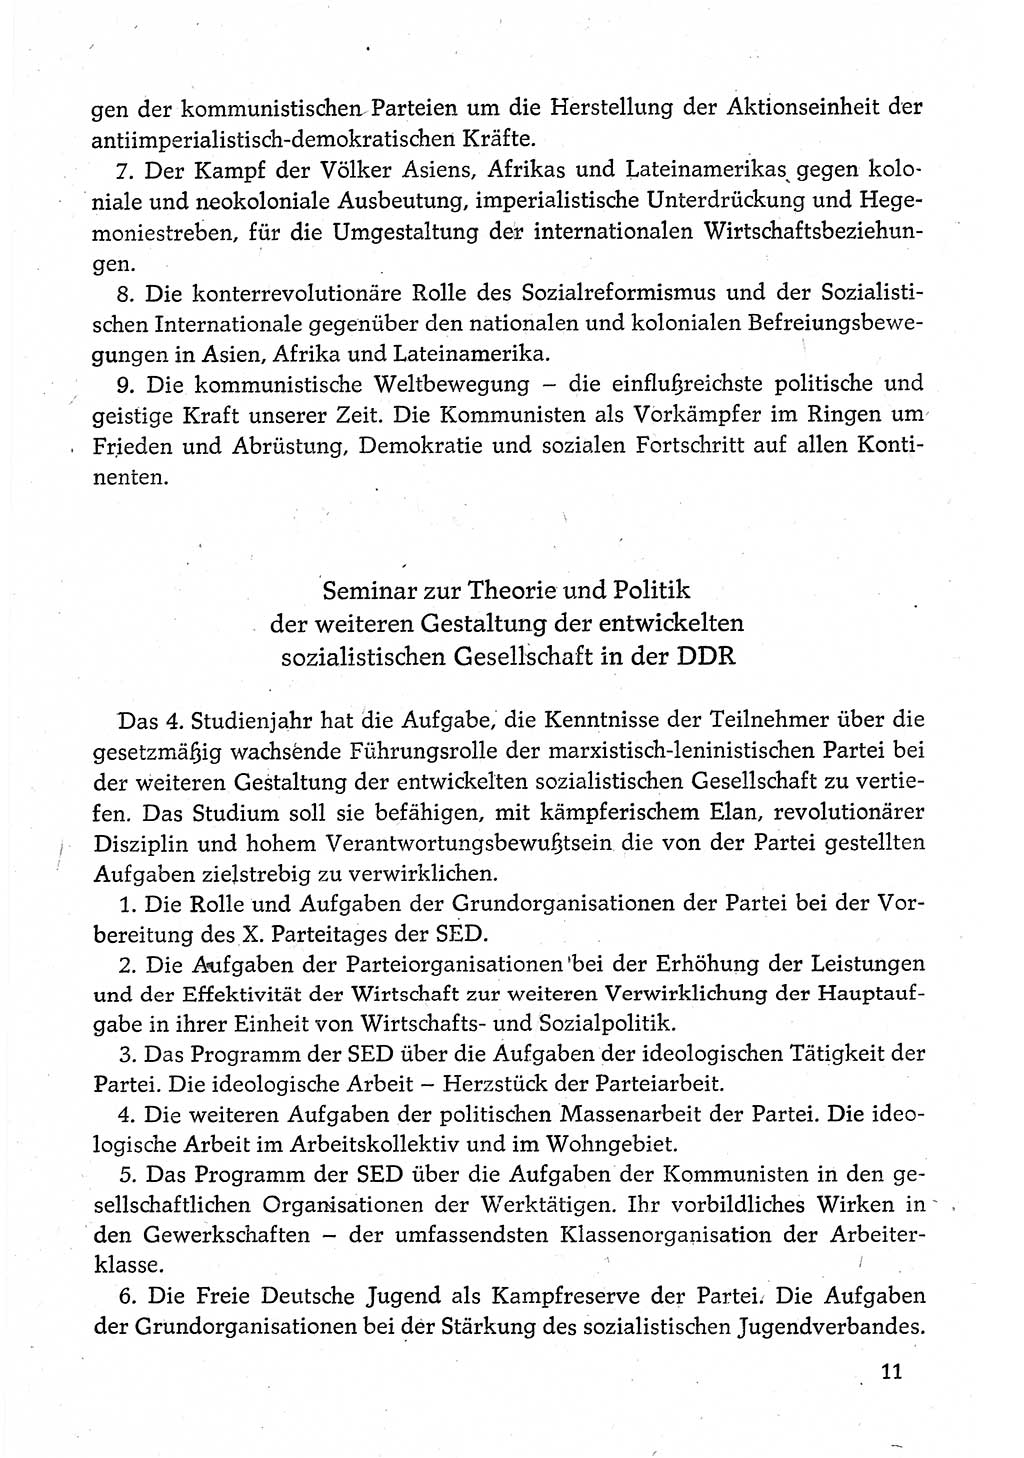 Dokumente der Sozialistischen Einheitspartei Deutschlands (SED) [Deutsche Demokratische Republik (DDR)] 1980-1981, Seite 11 (Dok. SED DDR 1980-1981, S. 11)